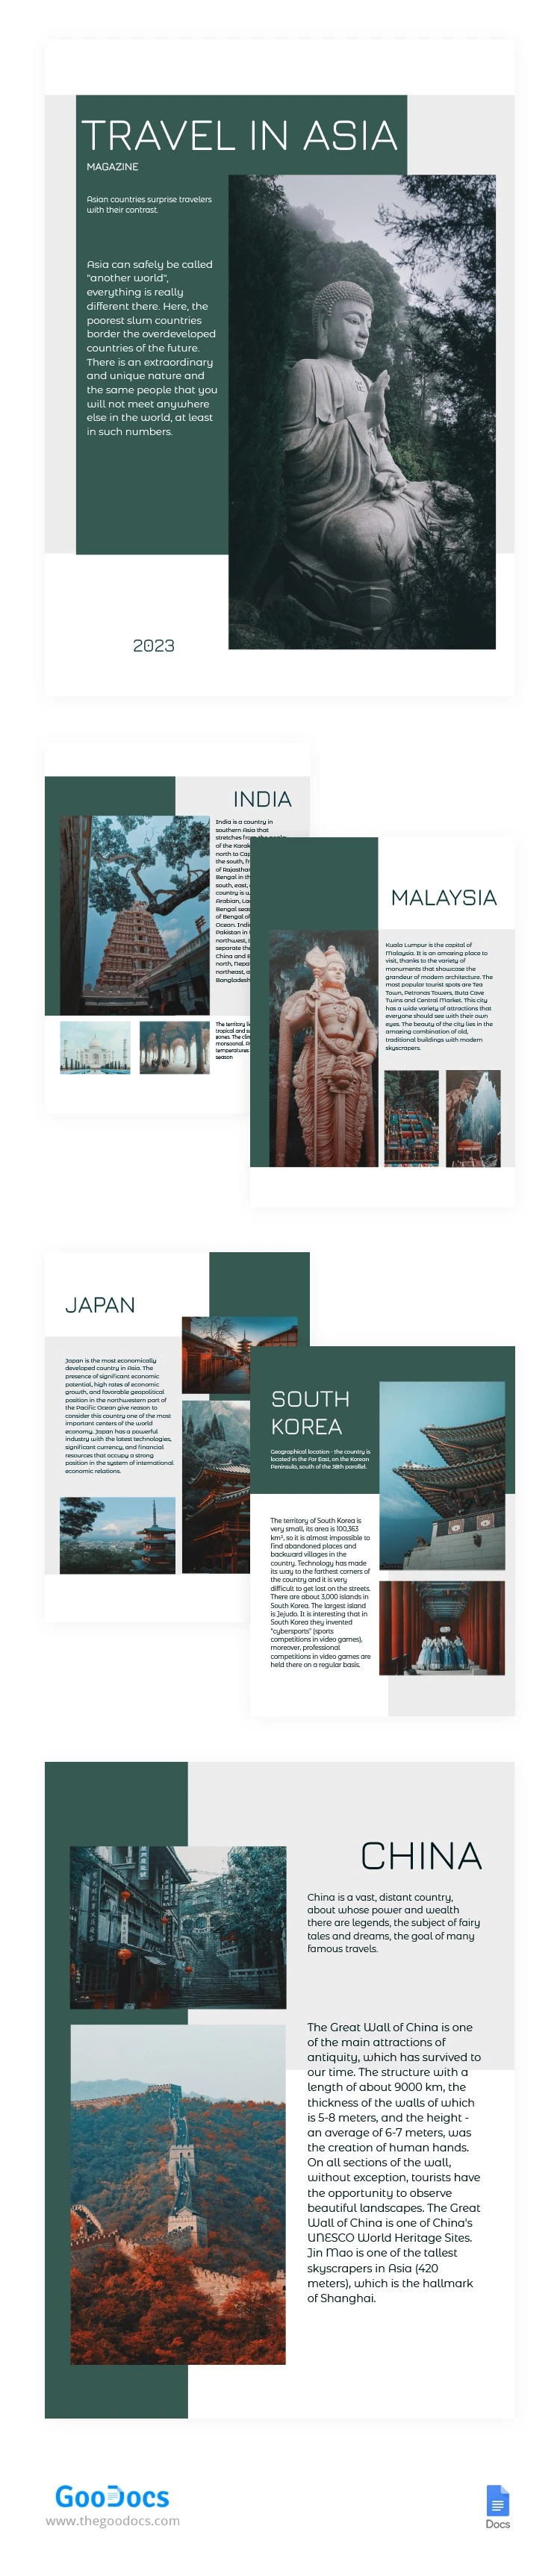 Viaggio in Asia Magazine - free Google Docs Template - 10064796